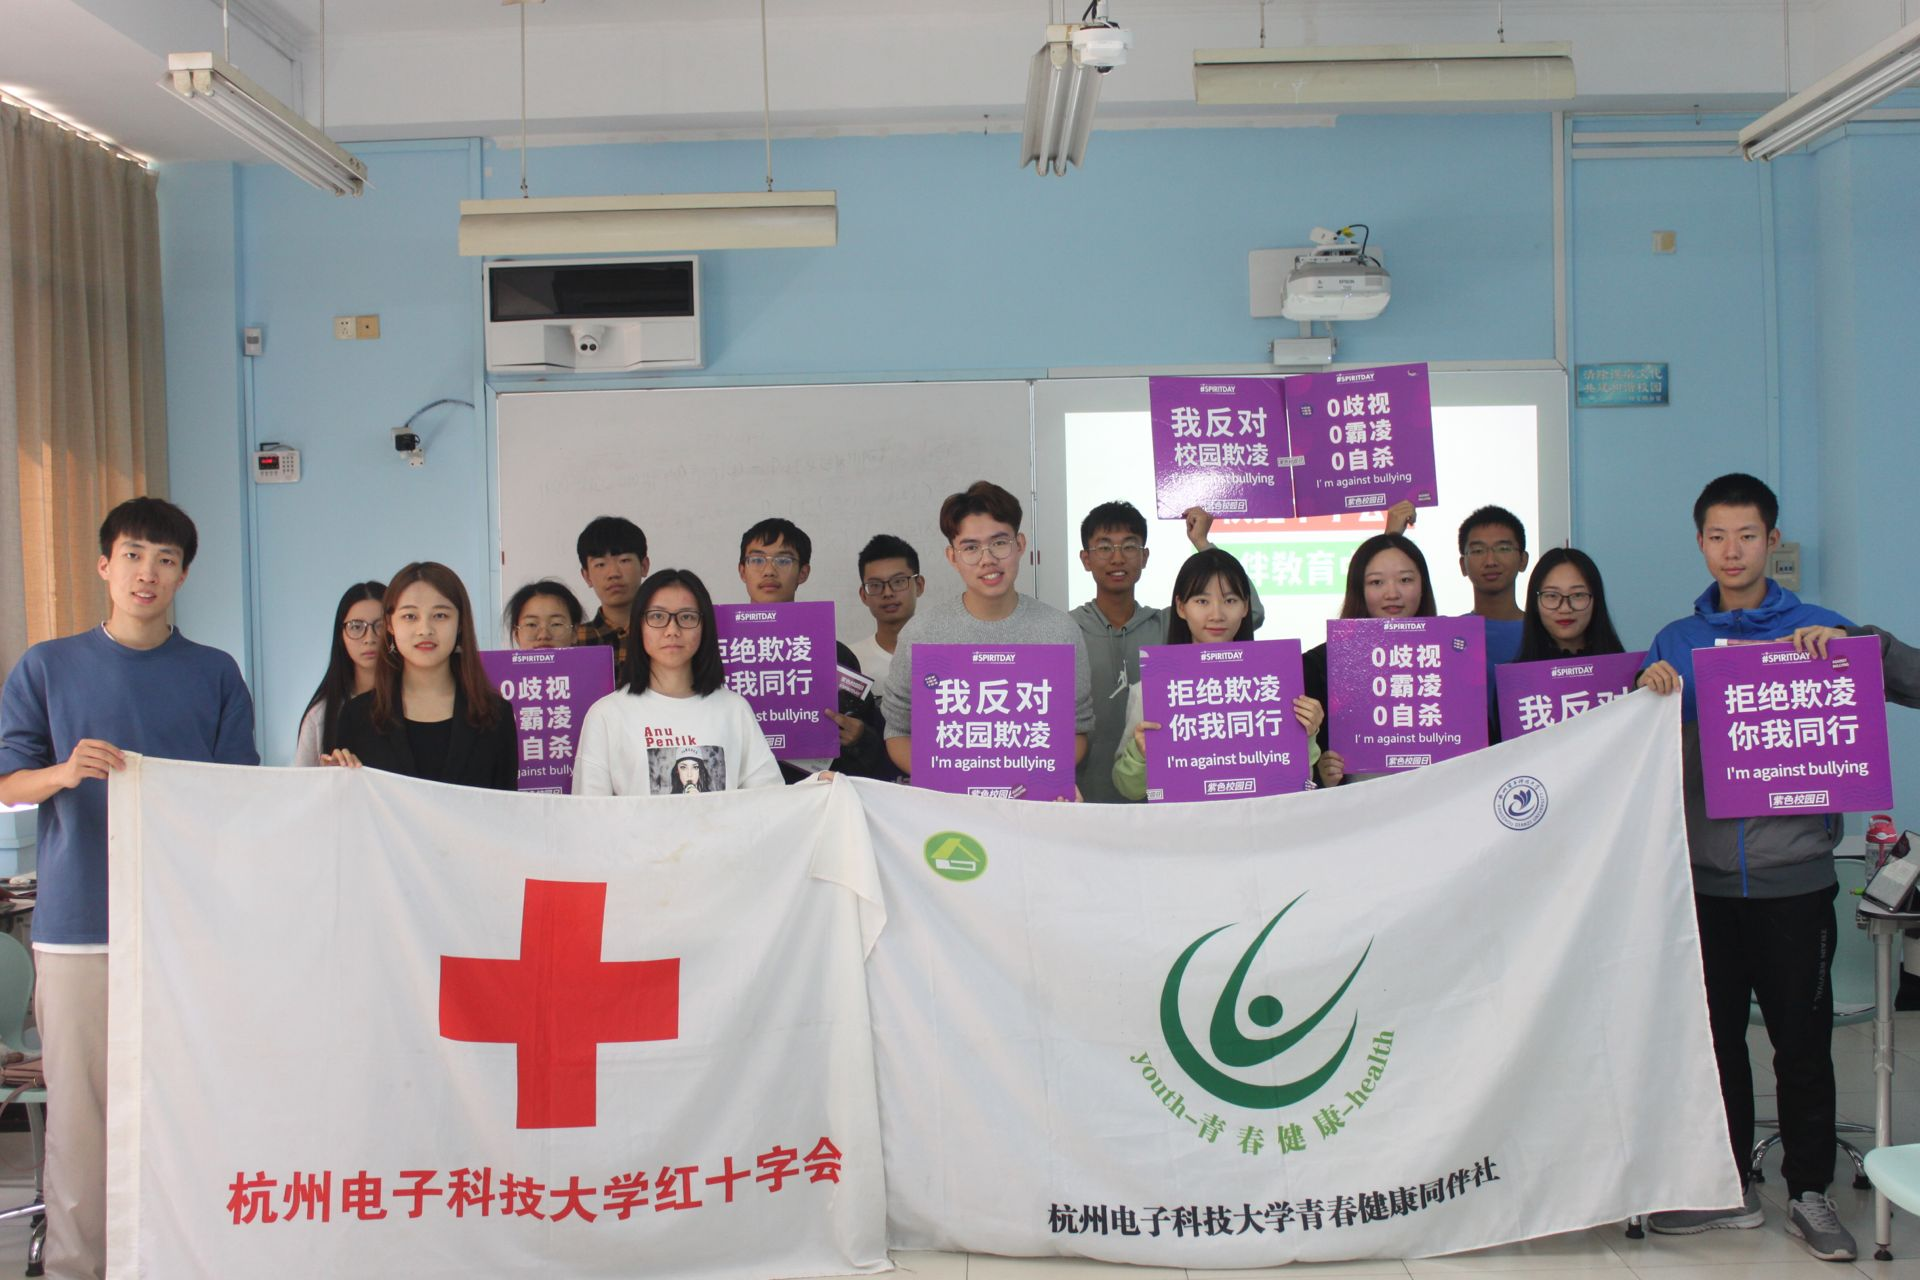 杭州电子科技大学 紫色校园日反性别霸凌宣传活动